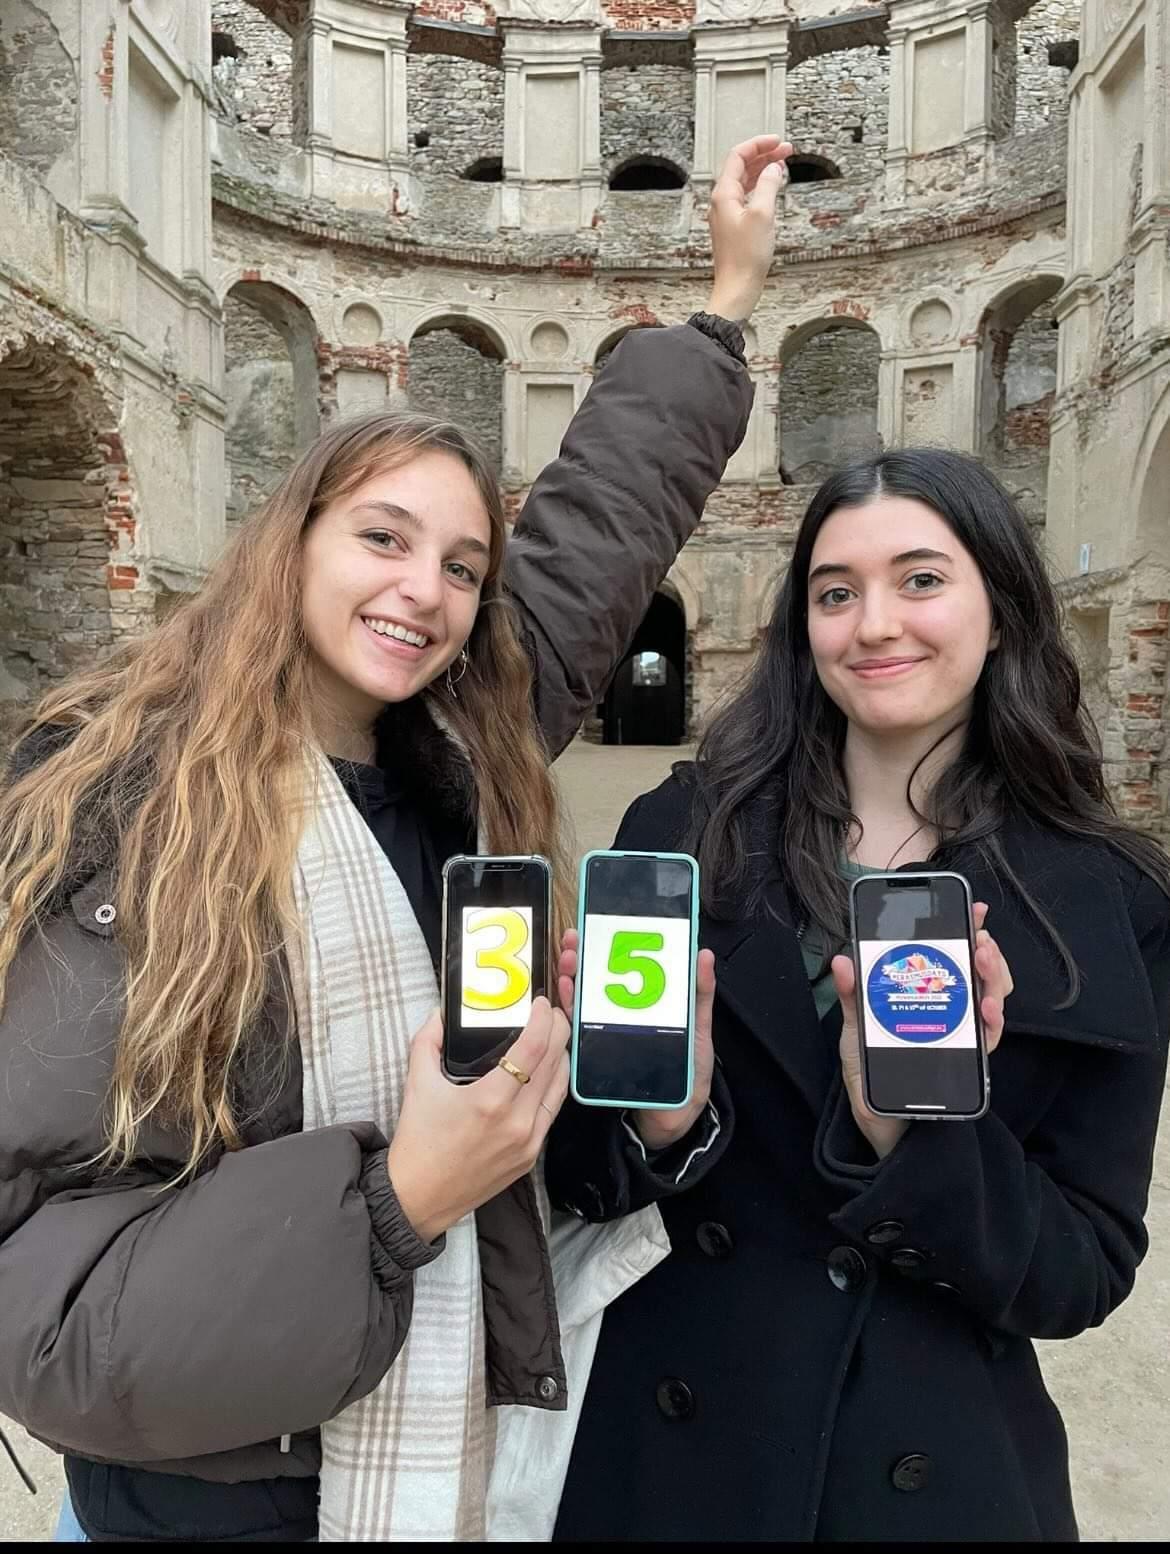 Dwie studentki trzymają telefony z wyświetlonym logo Erasmus Days. W tle ruiny zamku.